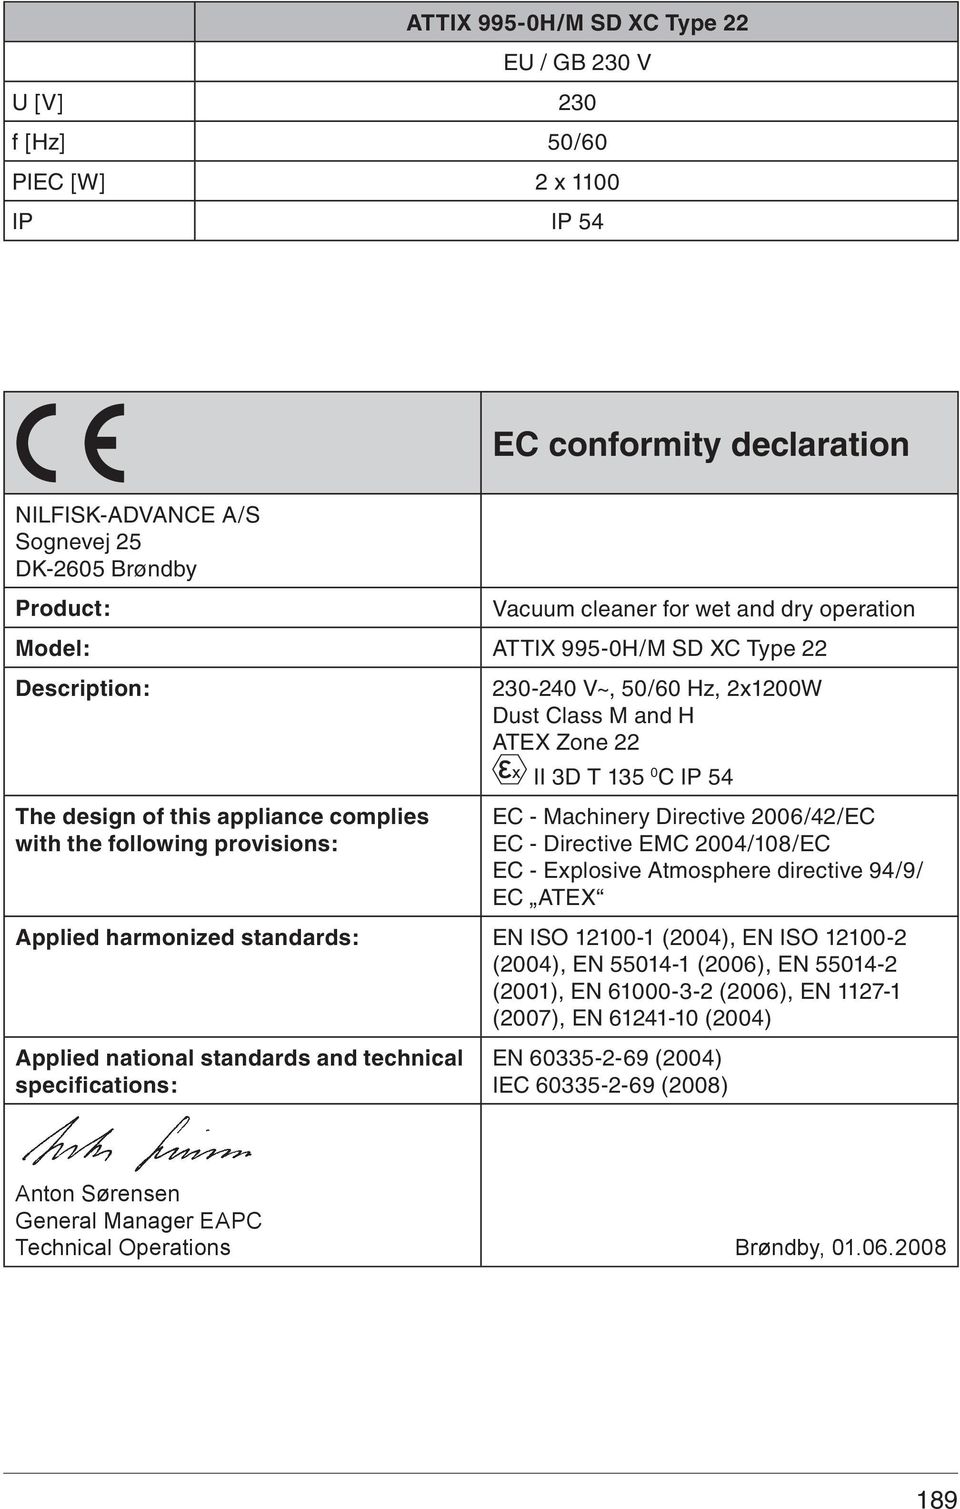 EC - Machinery Directive 006/4/EC EC - Directive EMC 004/108/EC EC - Explosive Atmosphere directive 94/9/ EC ATEX Applied harmonized standards: EN ISO 1100-1 (004), EN ISO 1100- (004), EN 55014-1